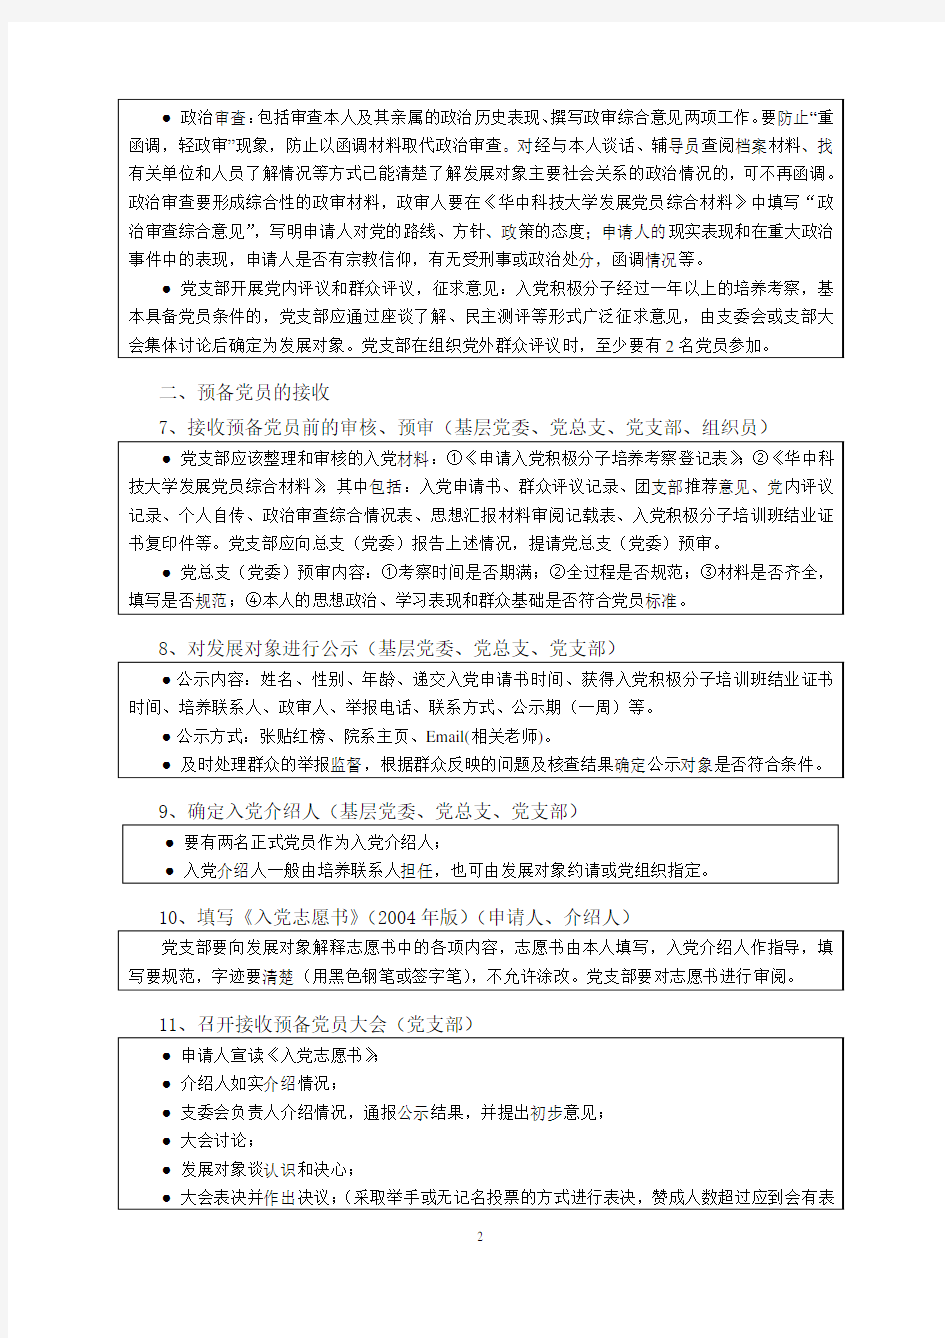 华中科技大学学生党员发展工作流程图